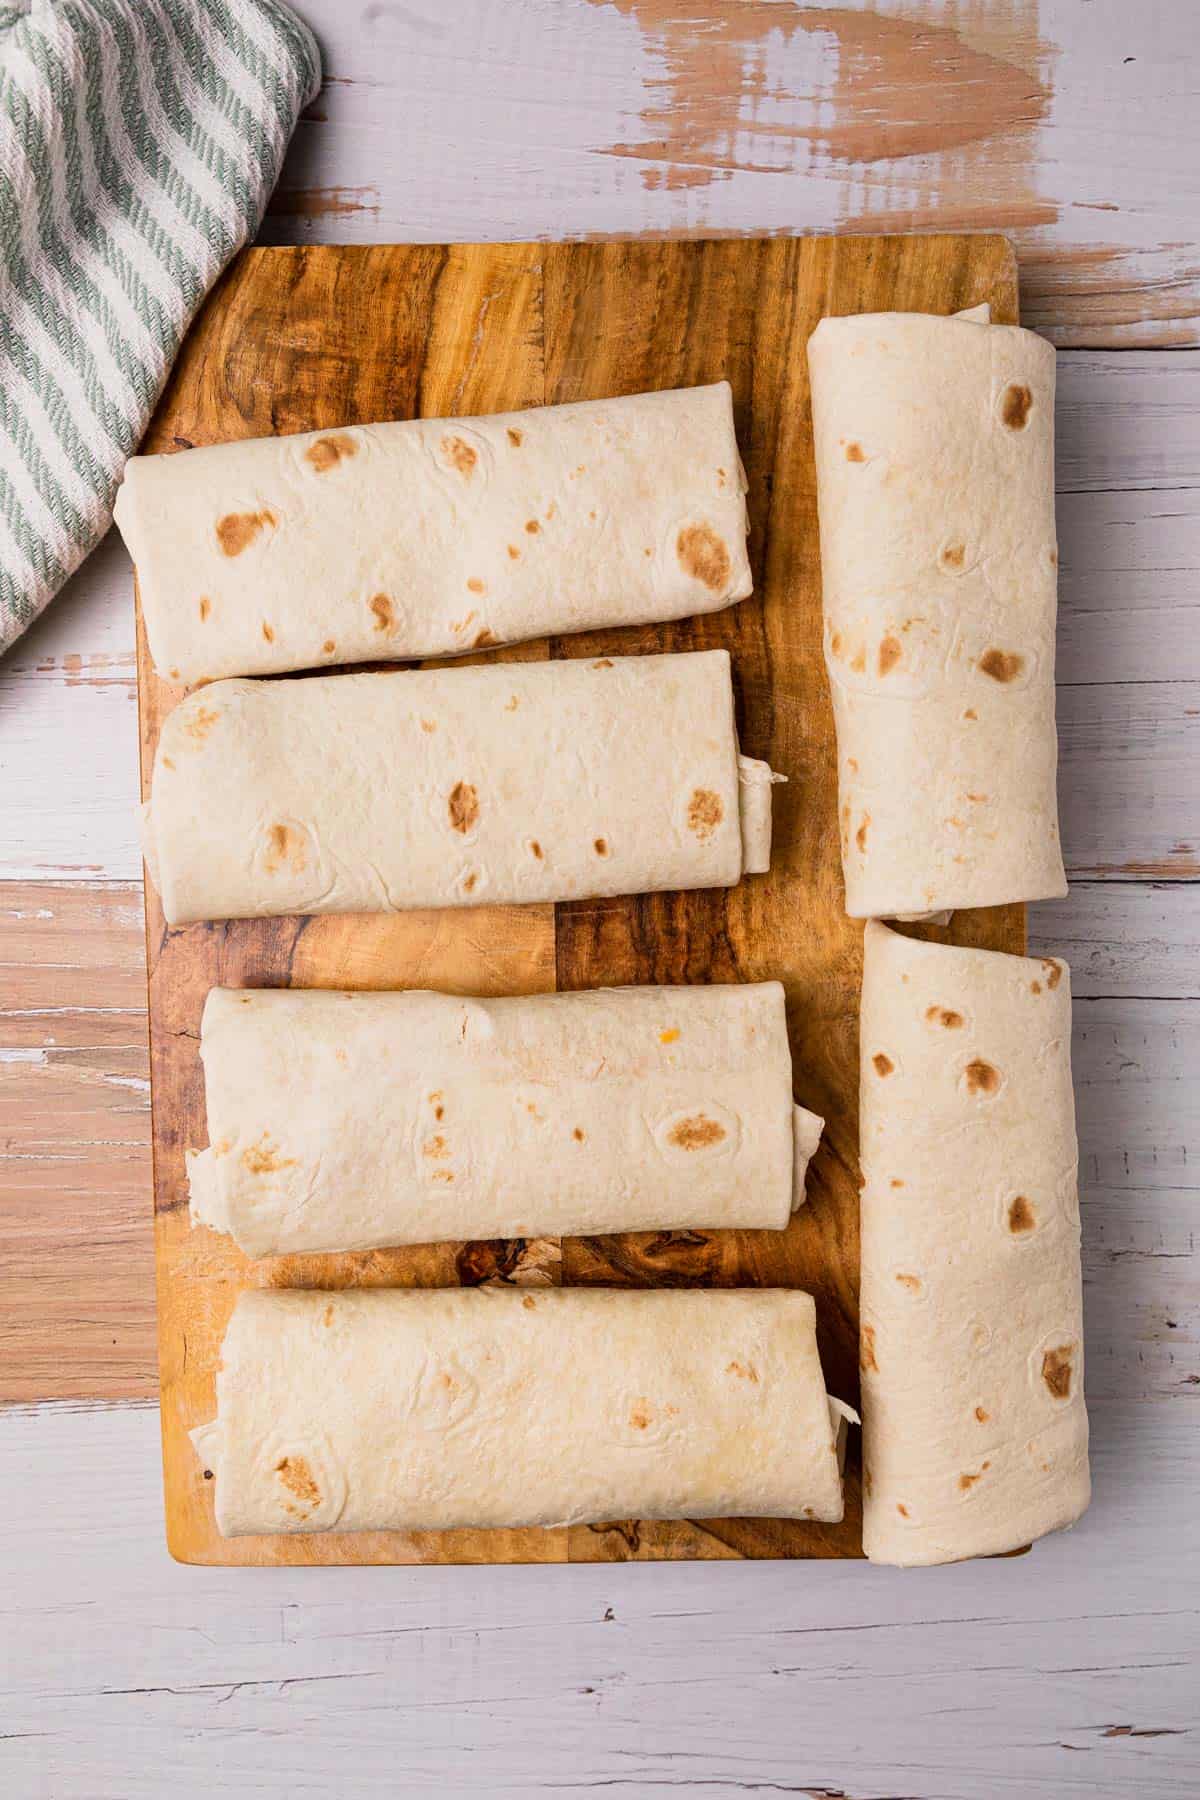 6 burritos on a cutting board